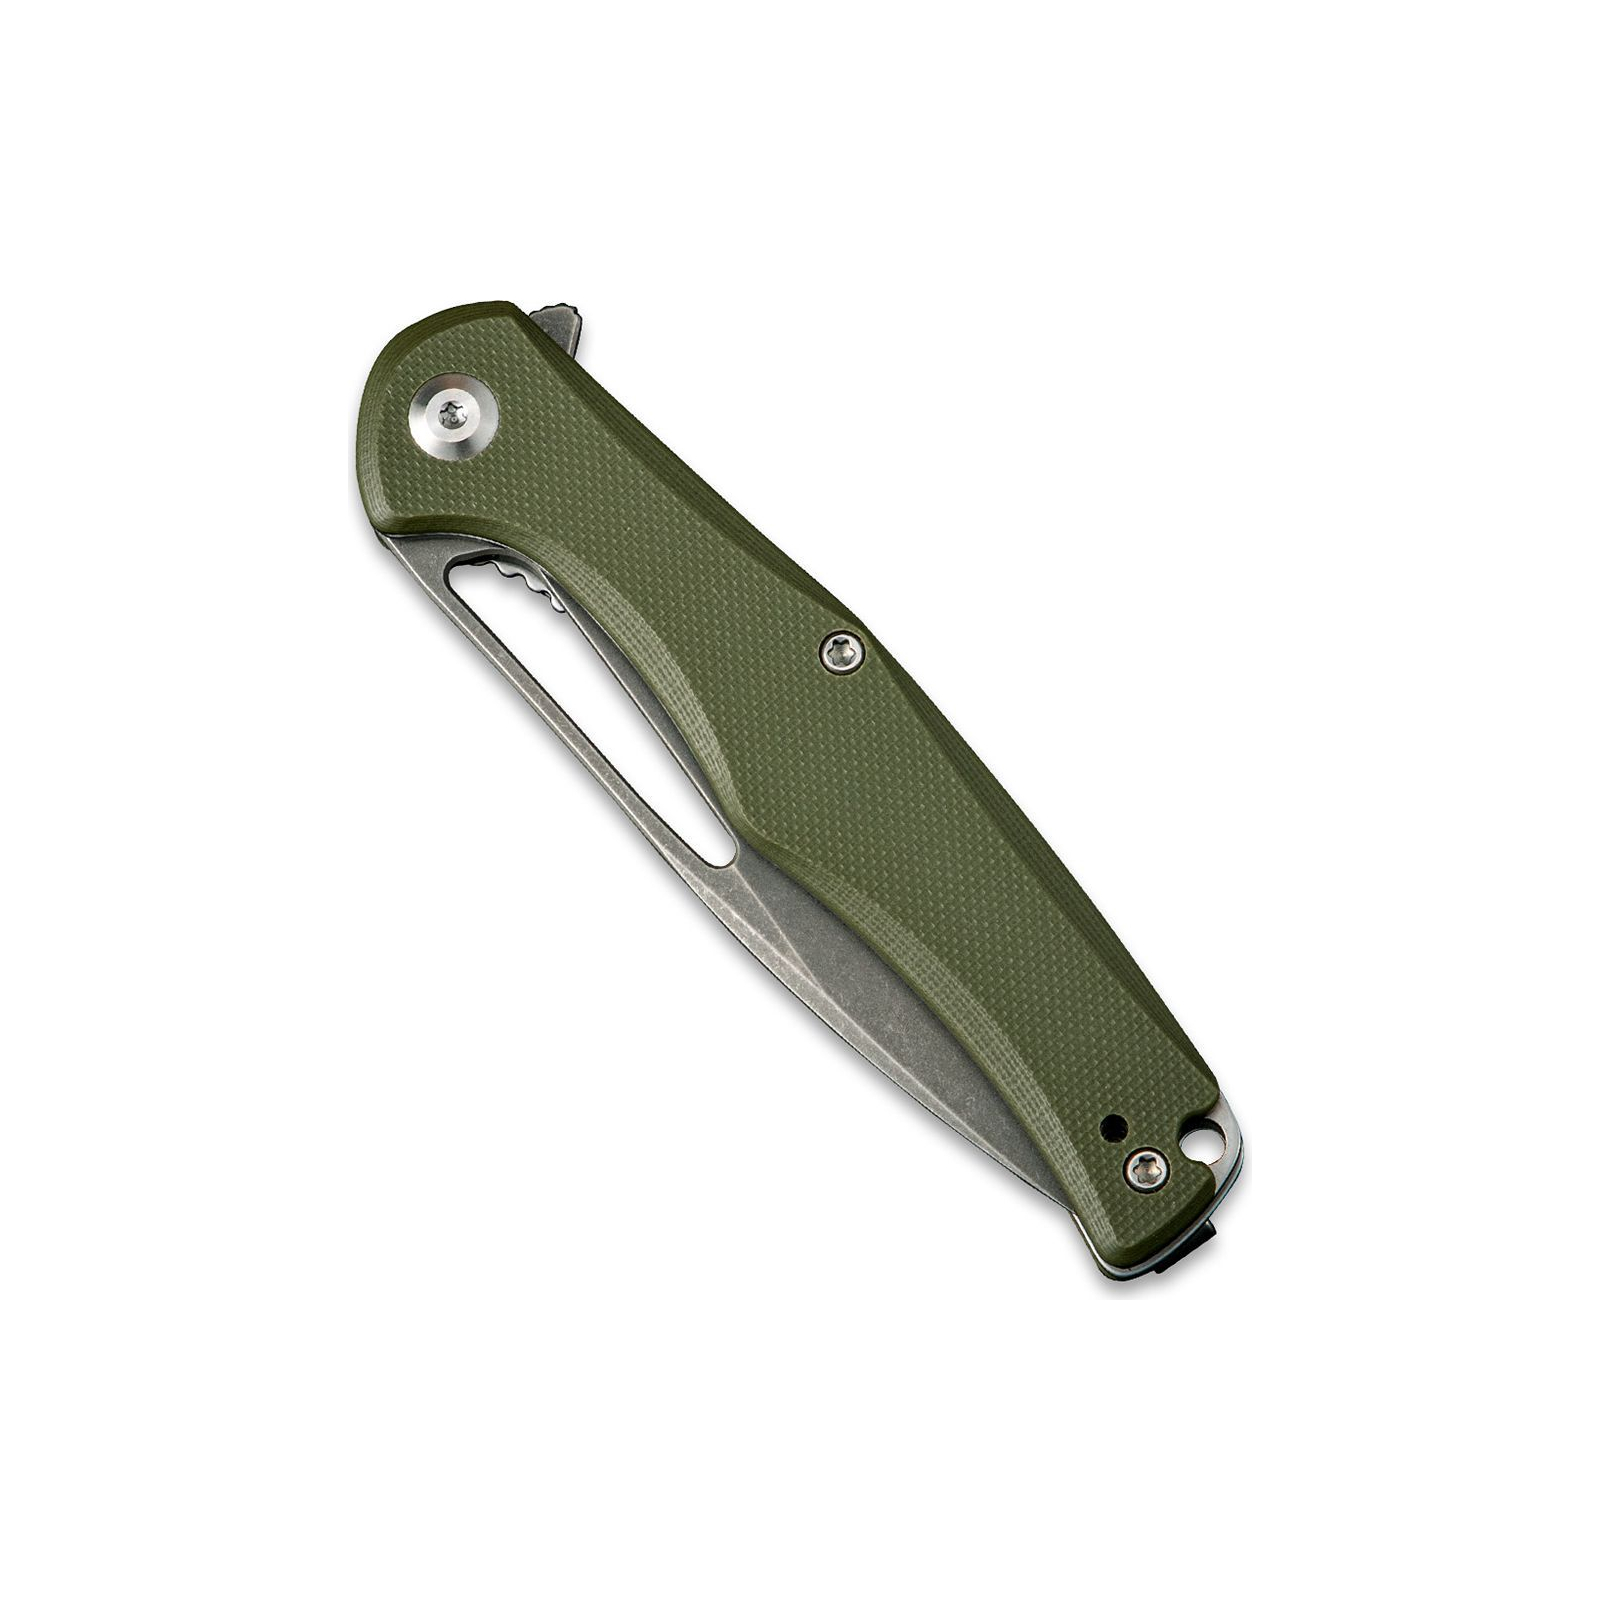 Нож Sencut Citius G10 Green (SA01A) изображение 4